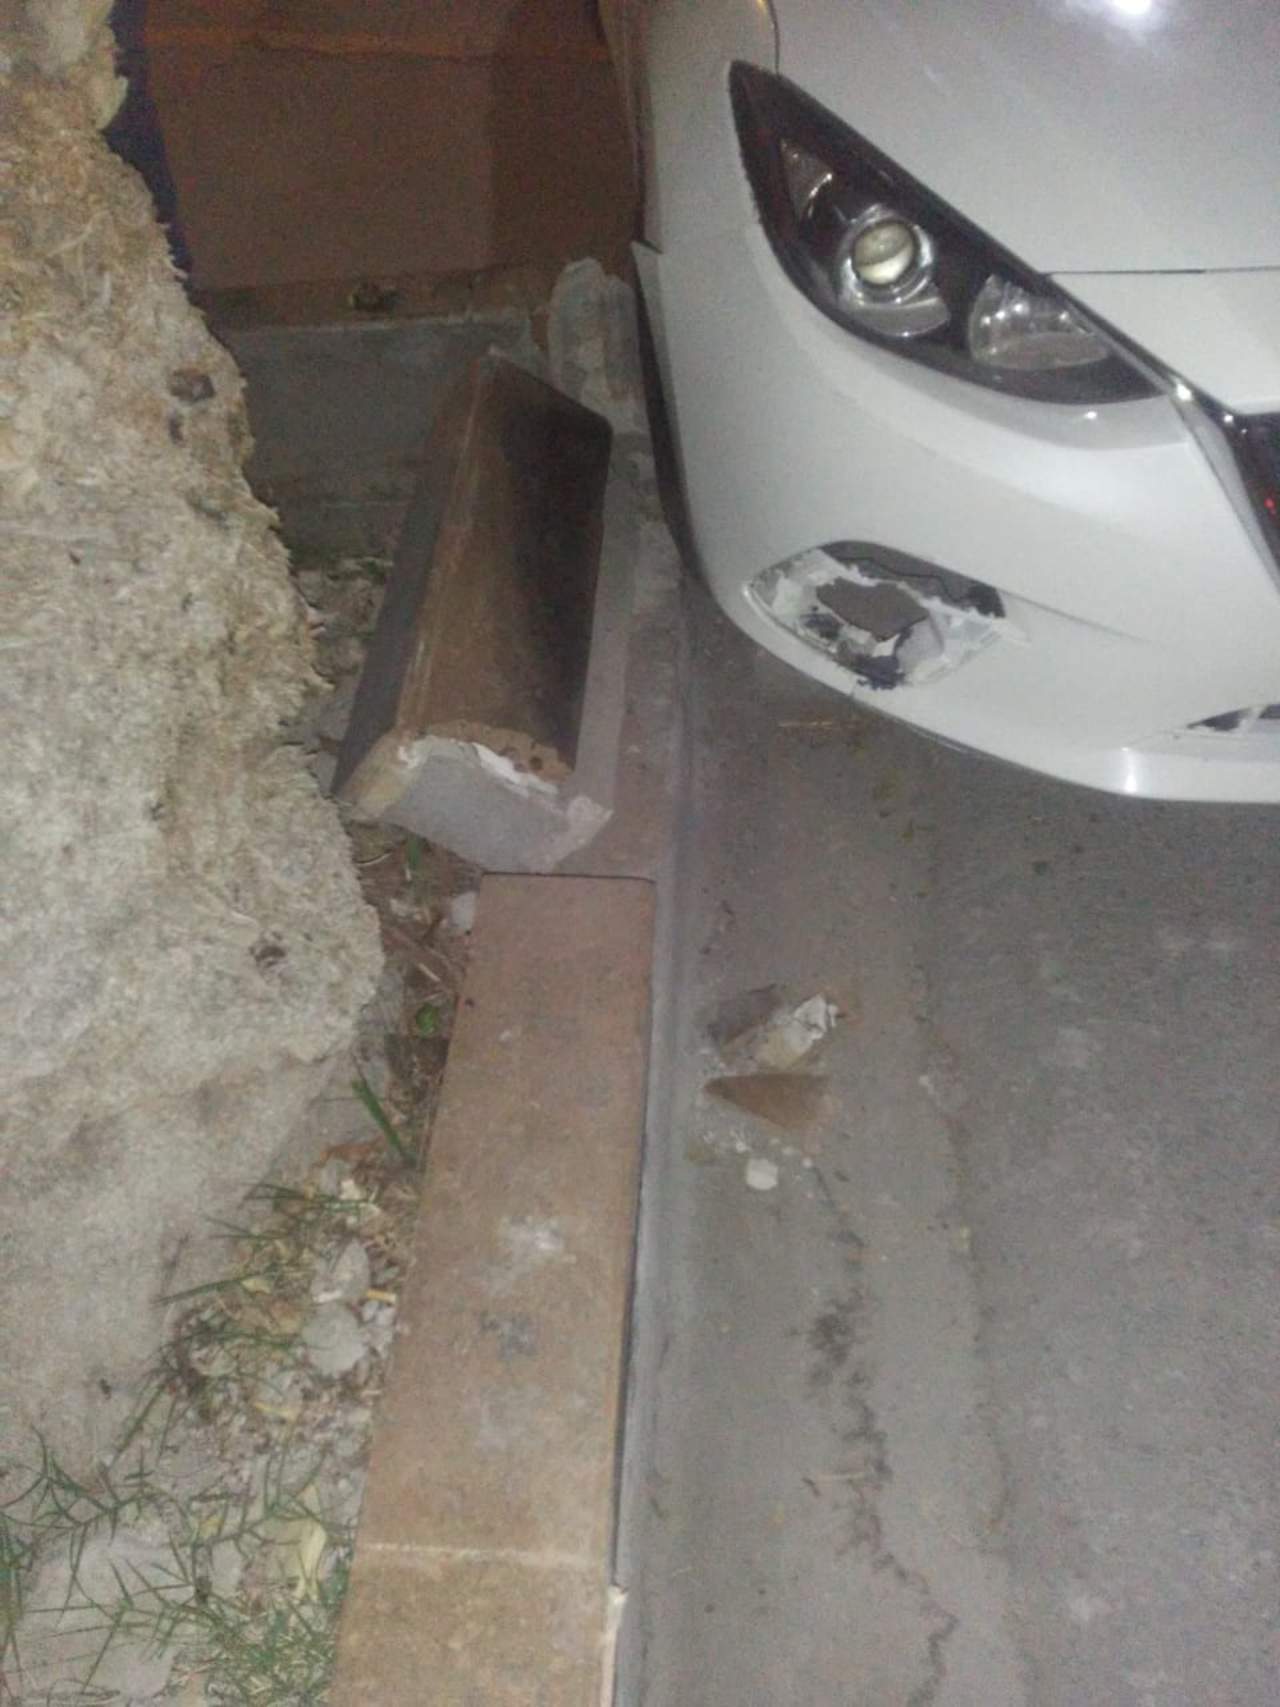 Accidente. El vehículo Mazda color blanco causó daños a una jardinera ubicada afuera de un domicilio.